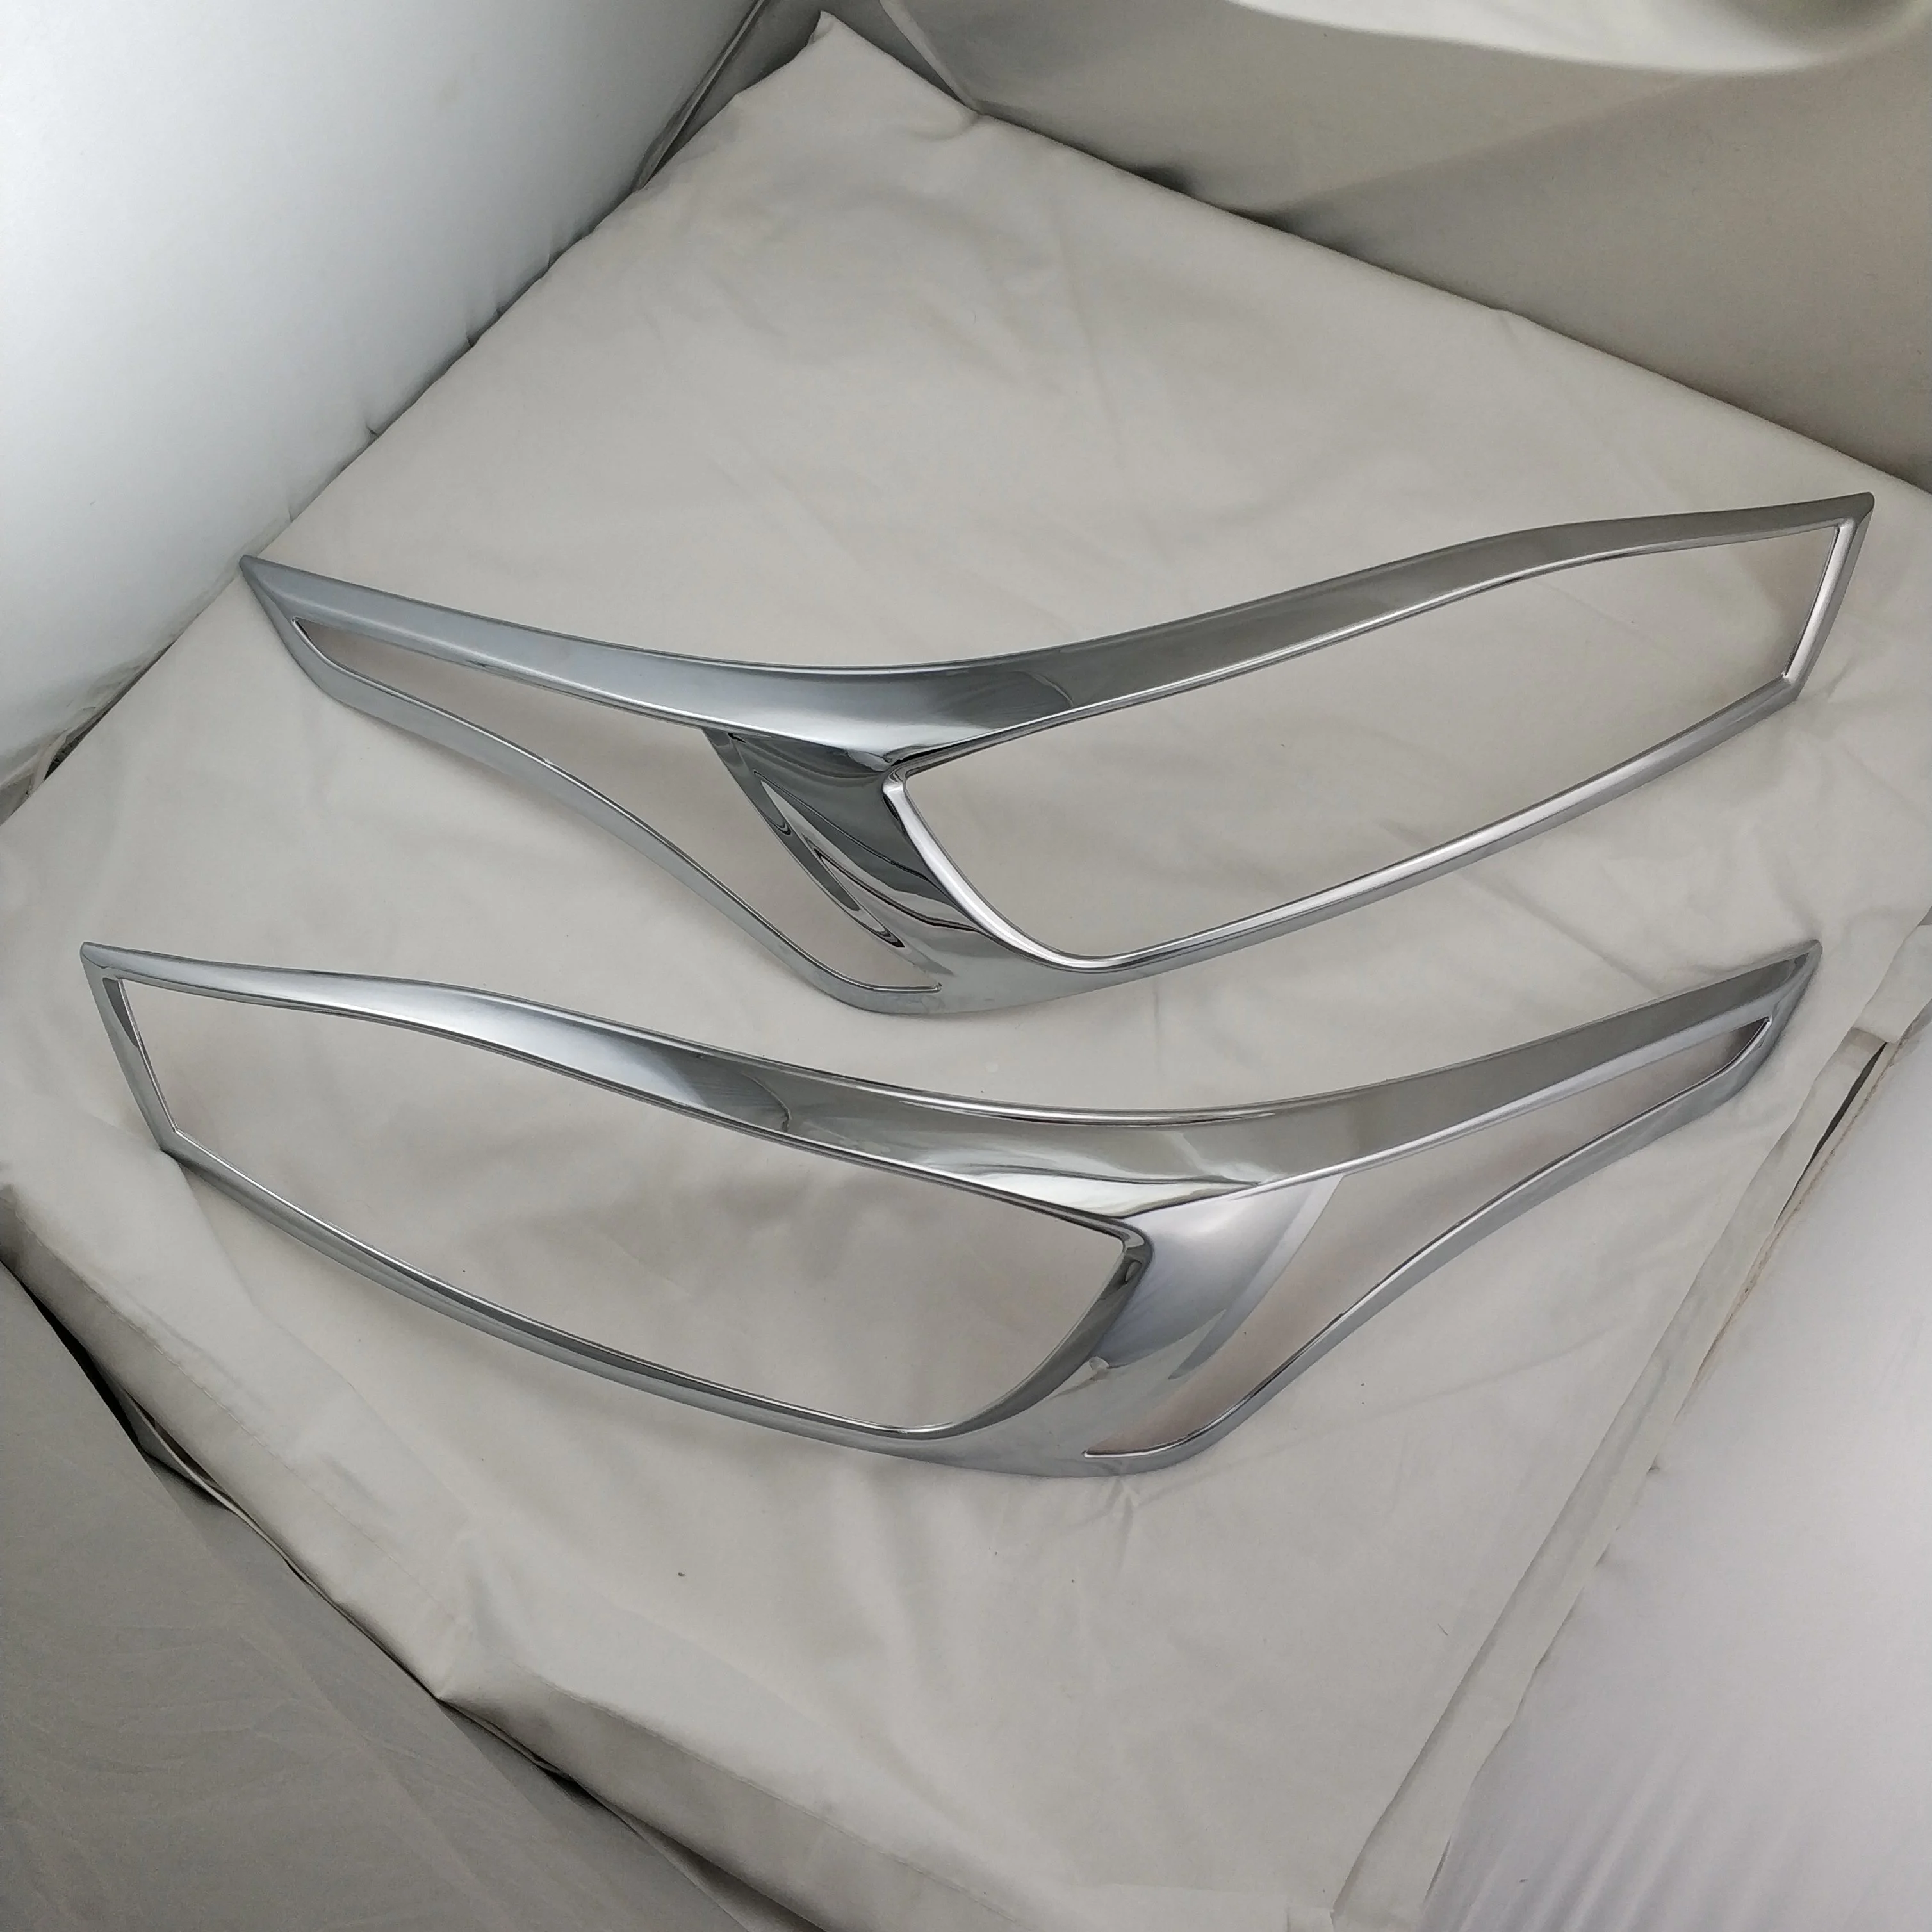 Хромированный обтекатель фар для Toyota Yaris 2013 головных ламп оболочка рамка Декоративные аксессуары для автомобиля